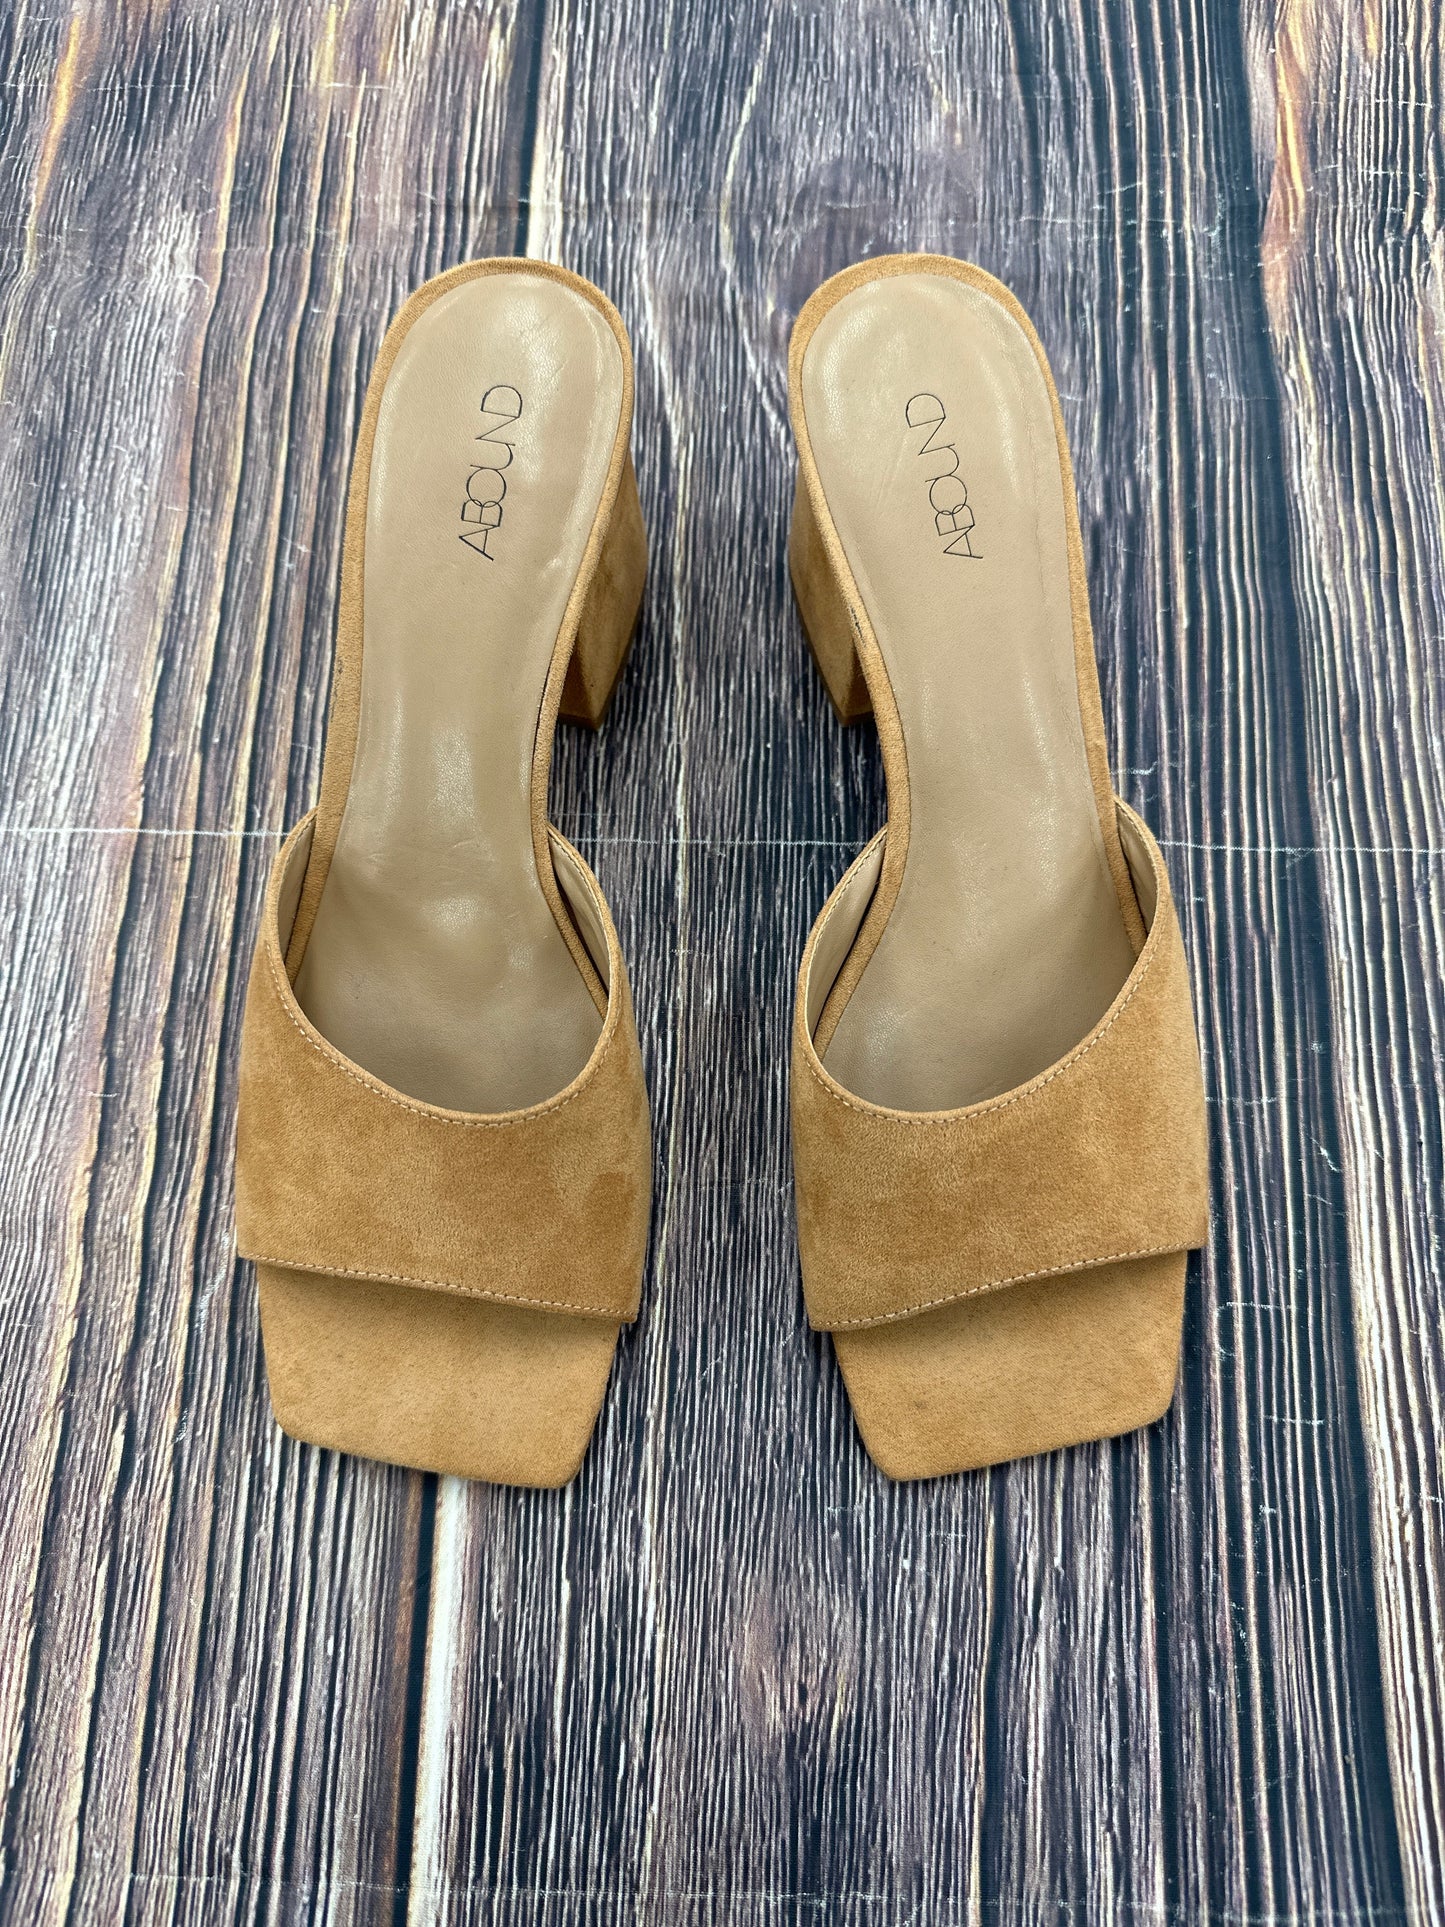 Sandals Heels Block By Abound  Size: 9